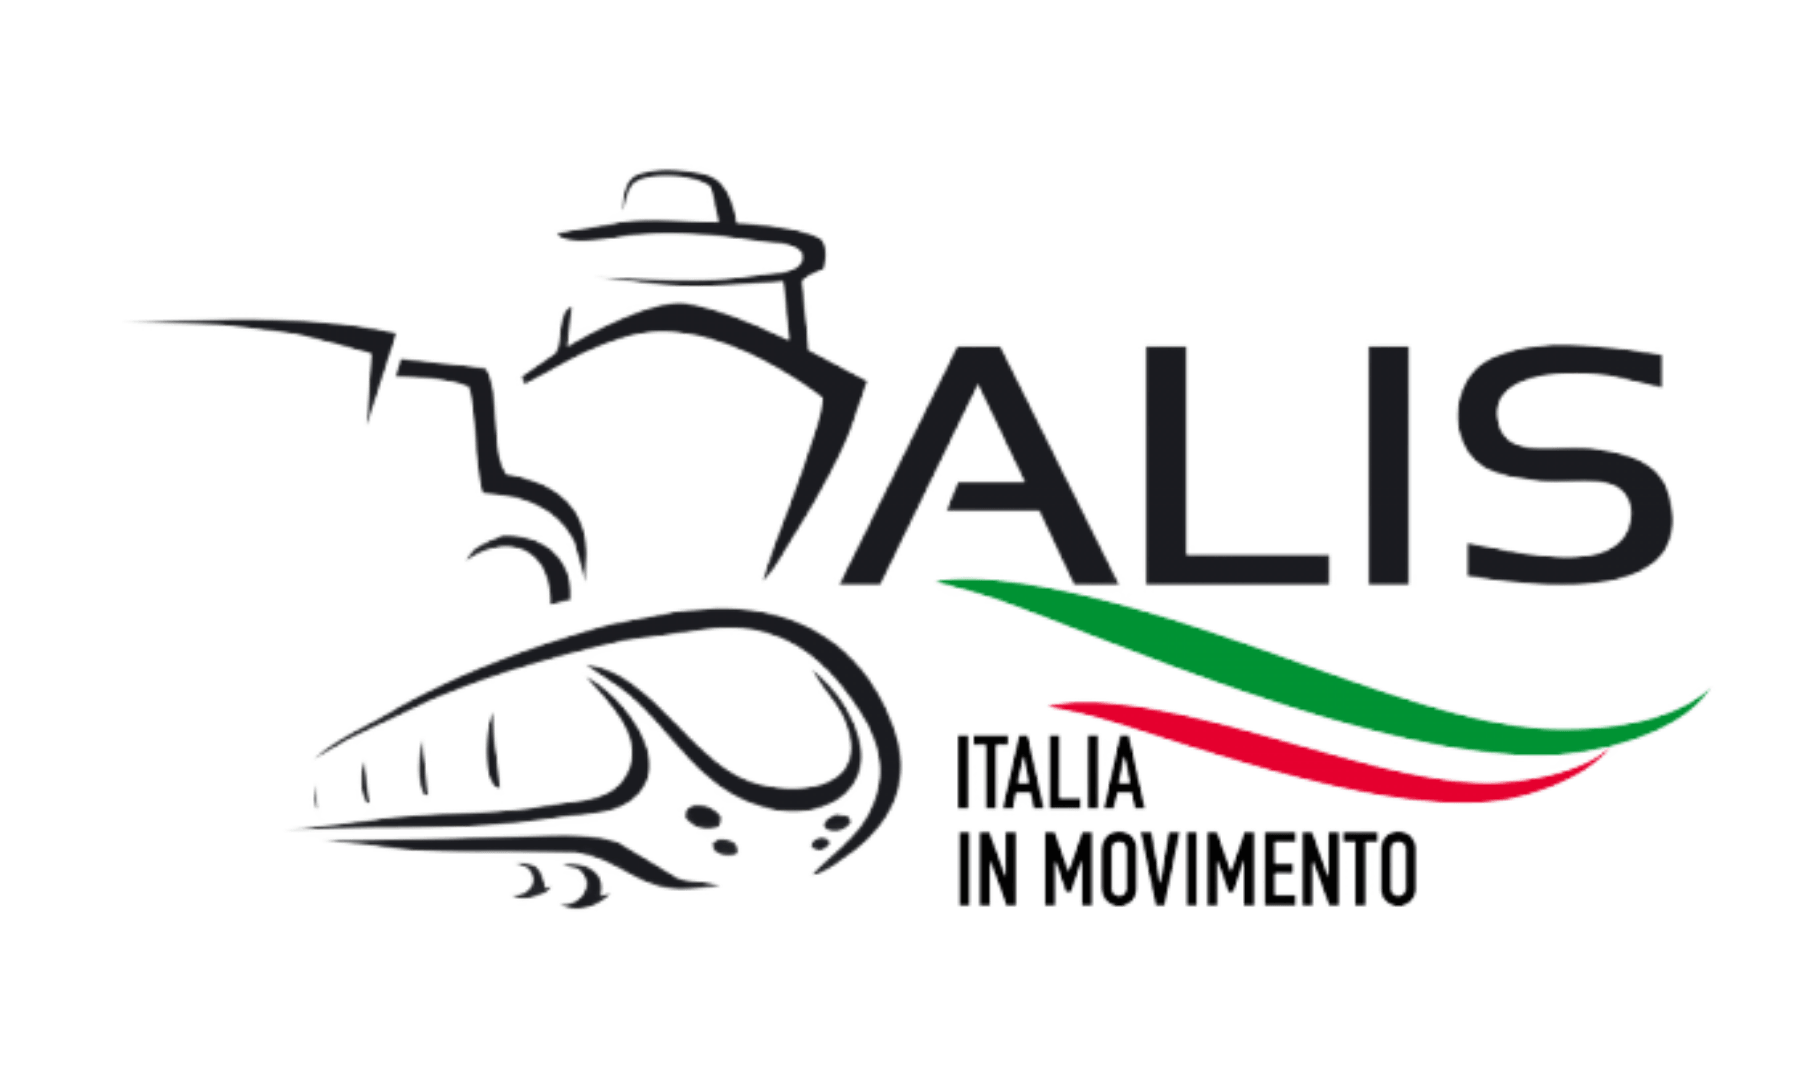 AC Servizi E Trasporti ALIS Italia in Movimento